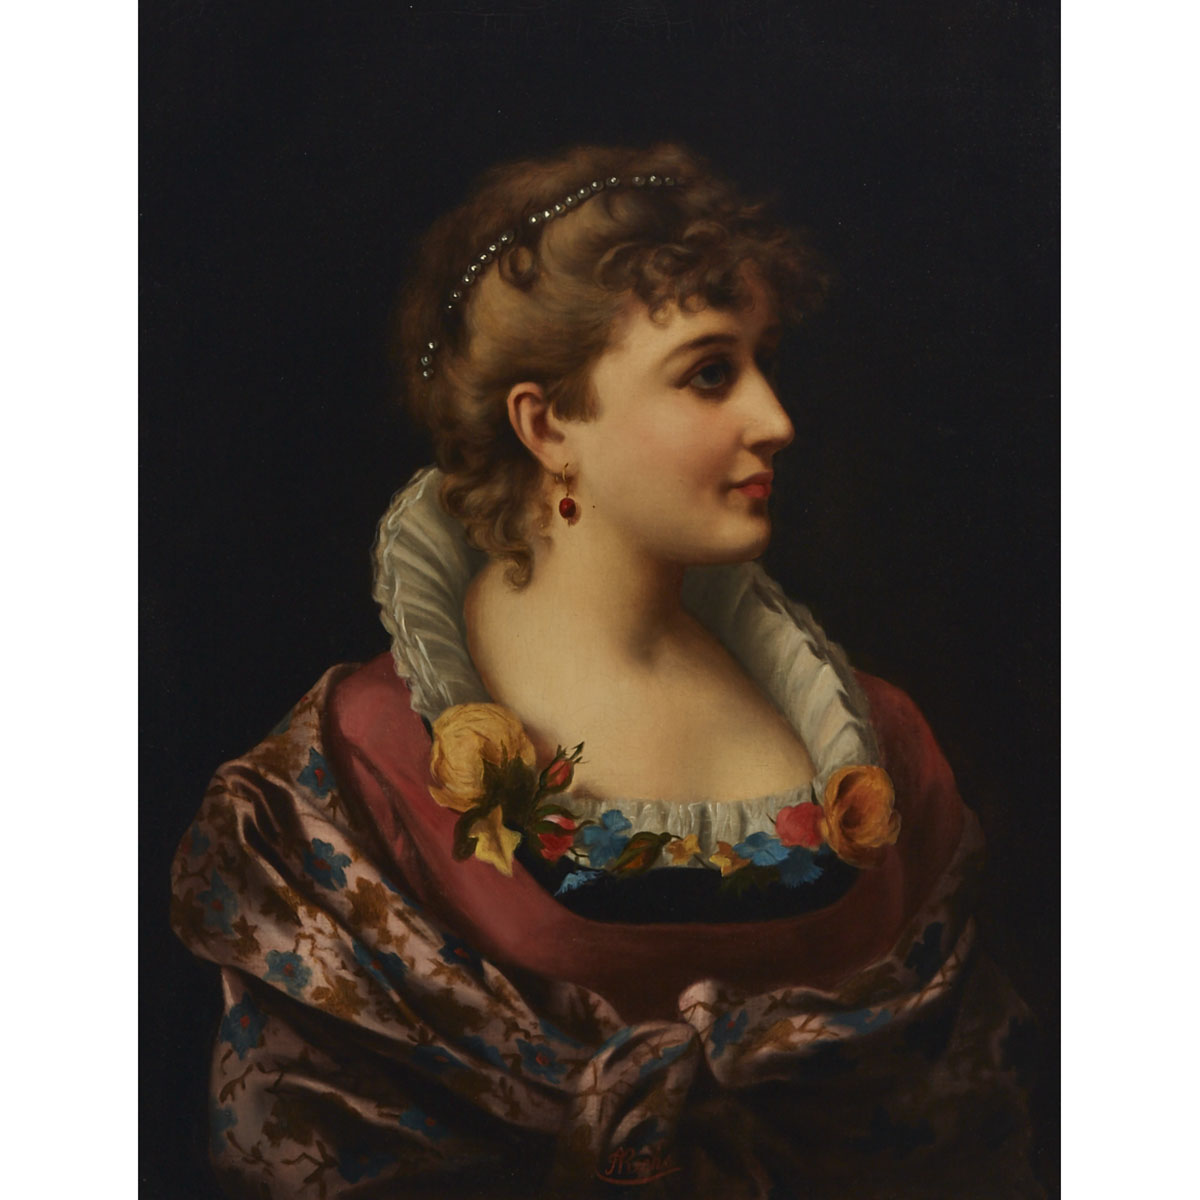 Adele Riche (1791-1887)